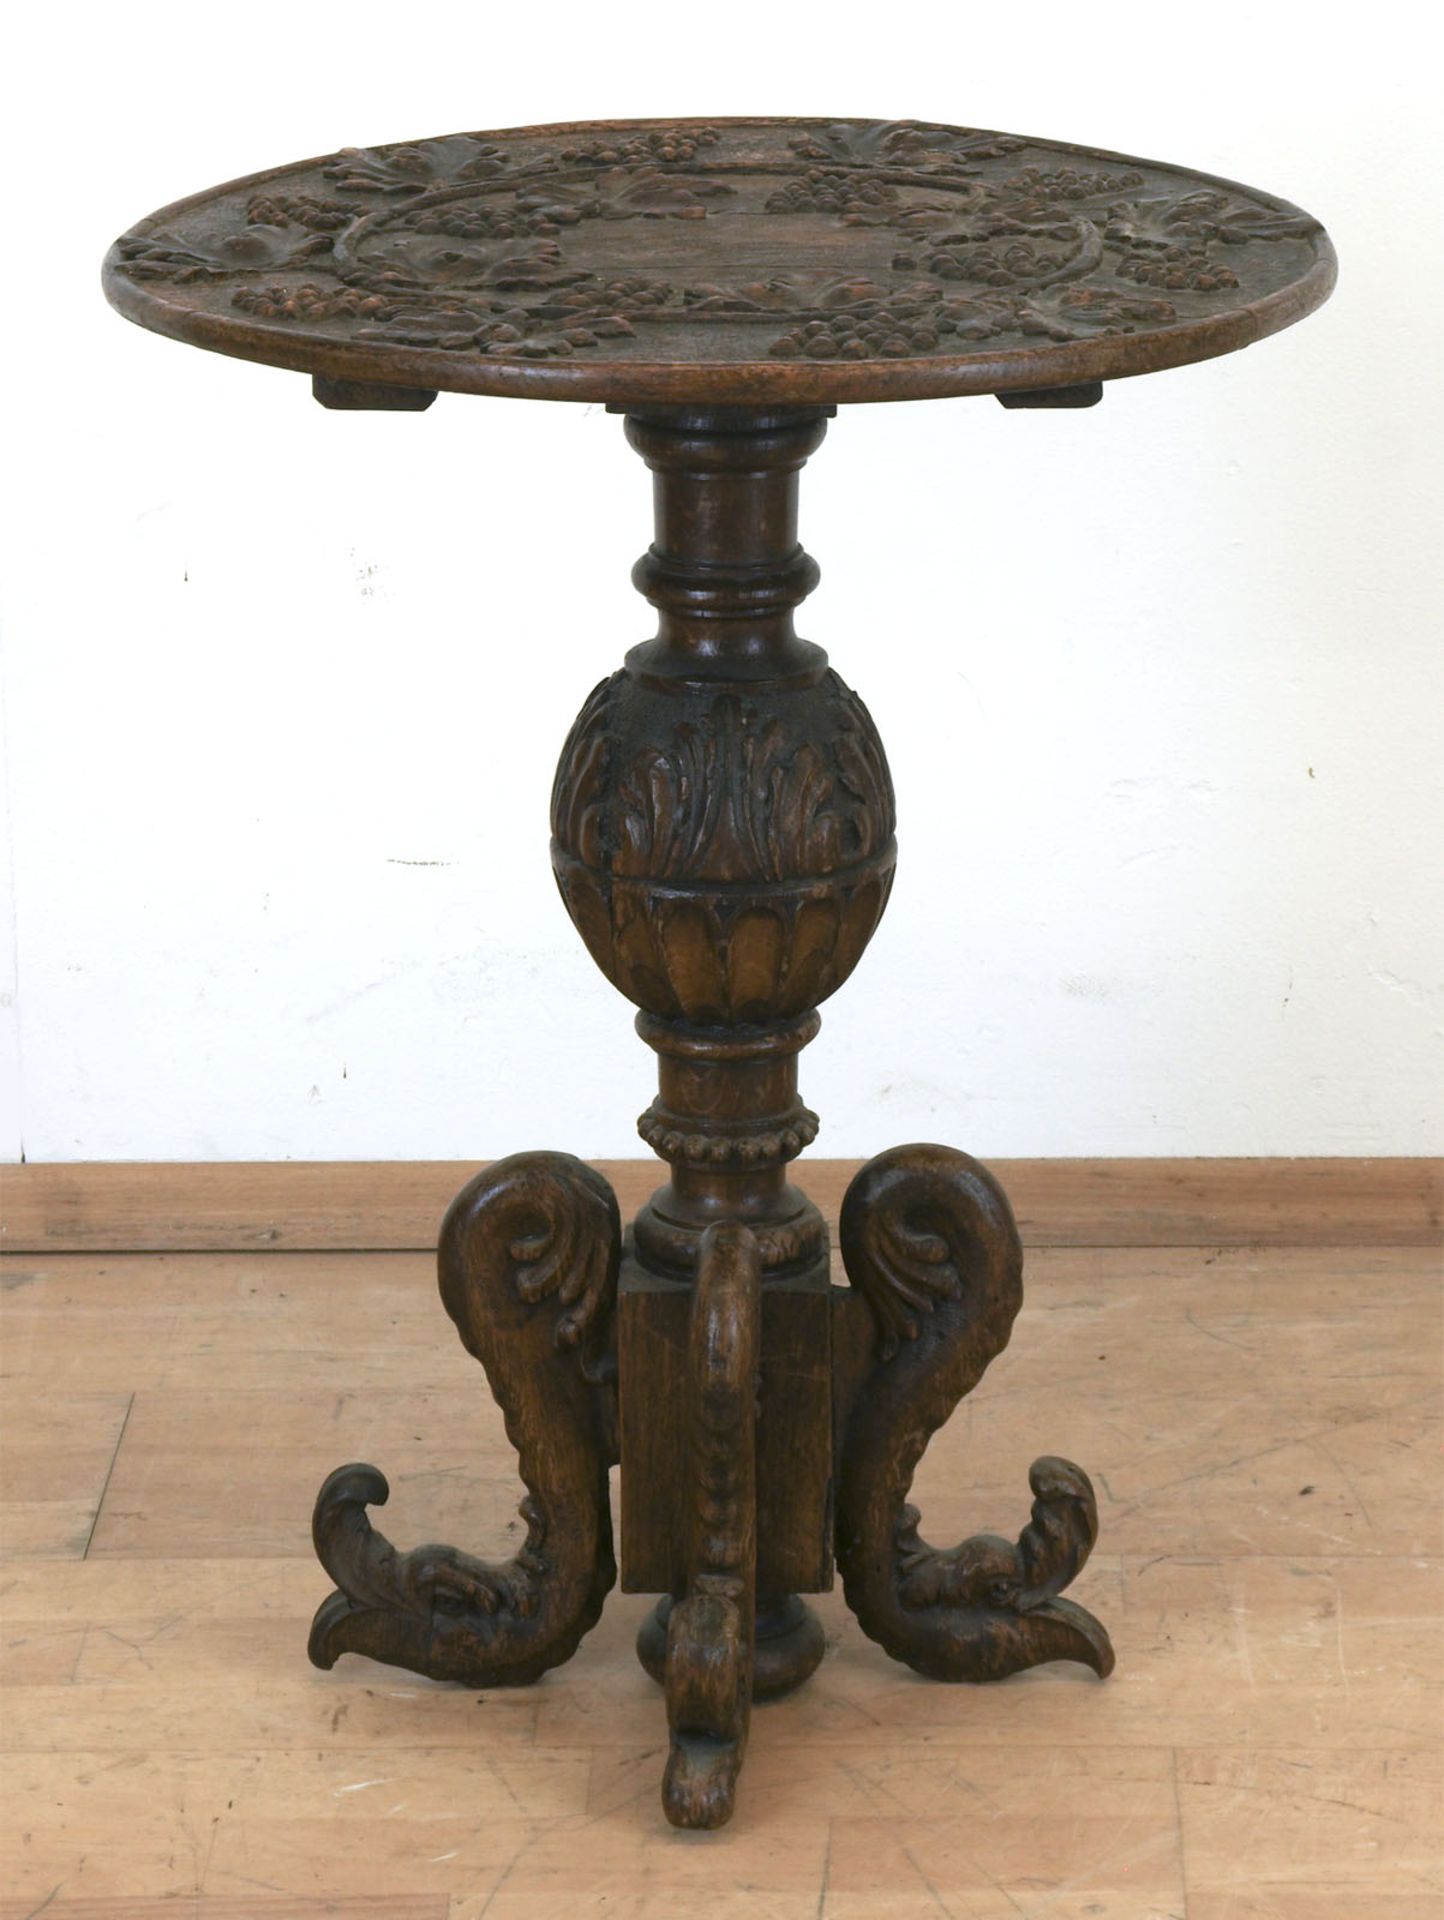 Historismus-Tisch, Eiche, beschnitzt, Balustersäule mit 4 Füßen in Form von Fabelwesen, runde Platt